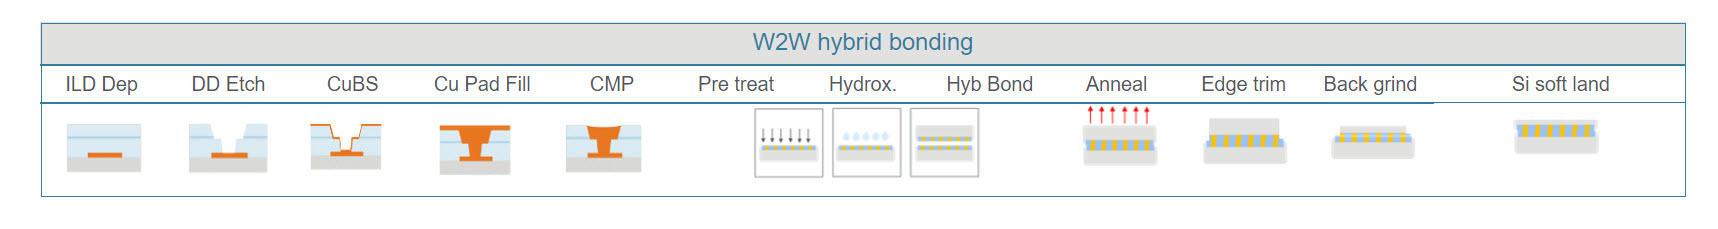 Hybrid Bonding